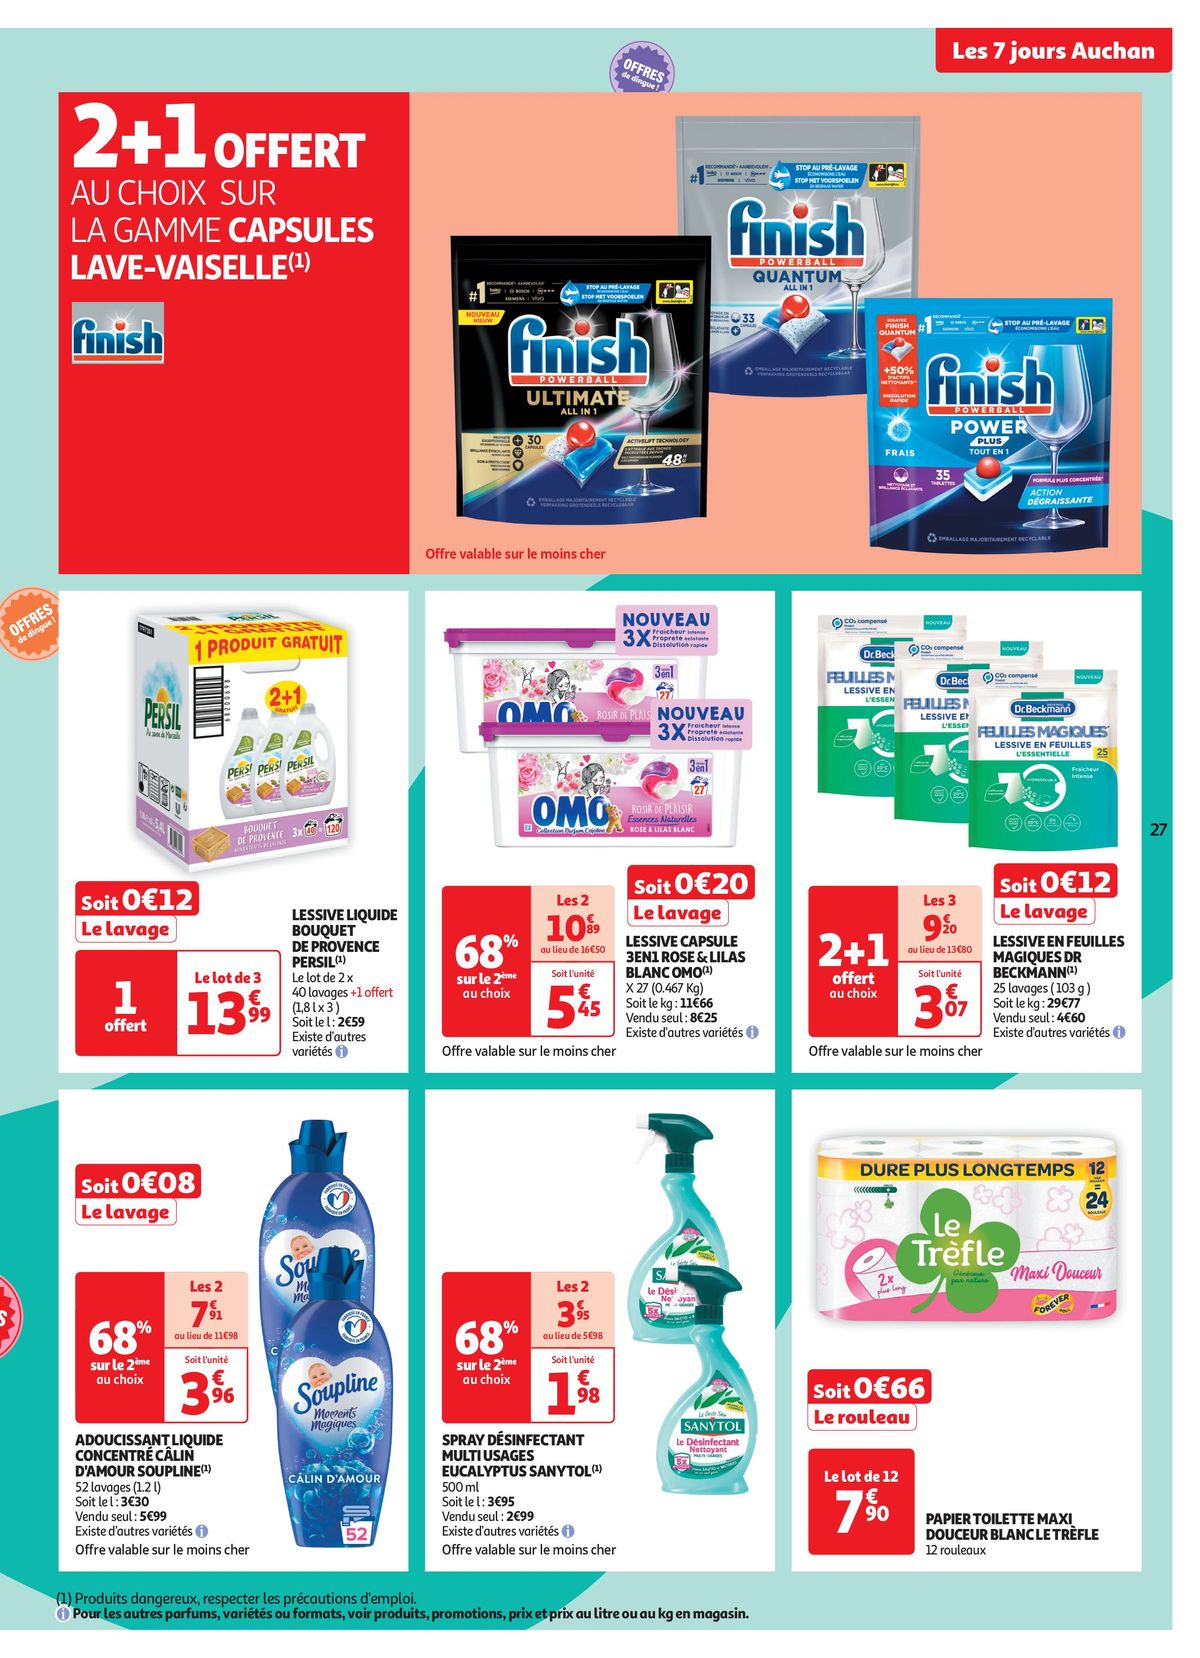 Catalogue C'est les 7 jours Auchan dans votre super !, page 00027